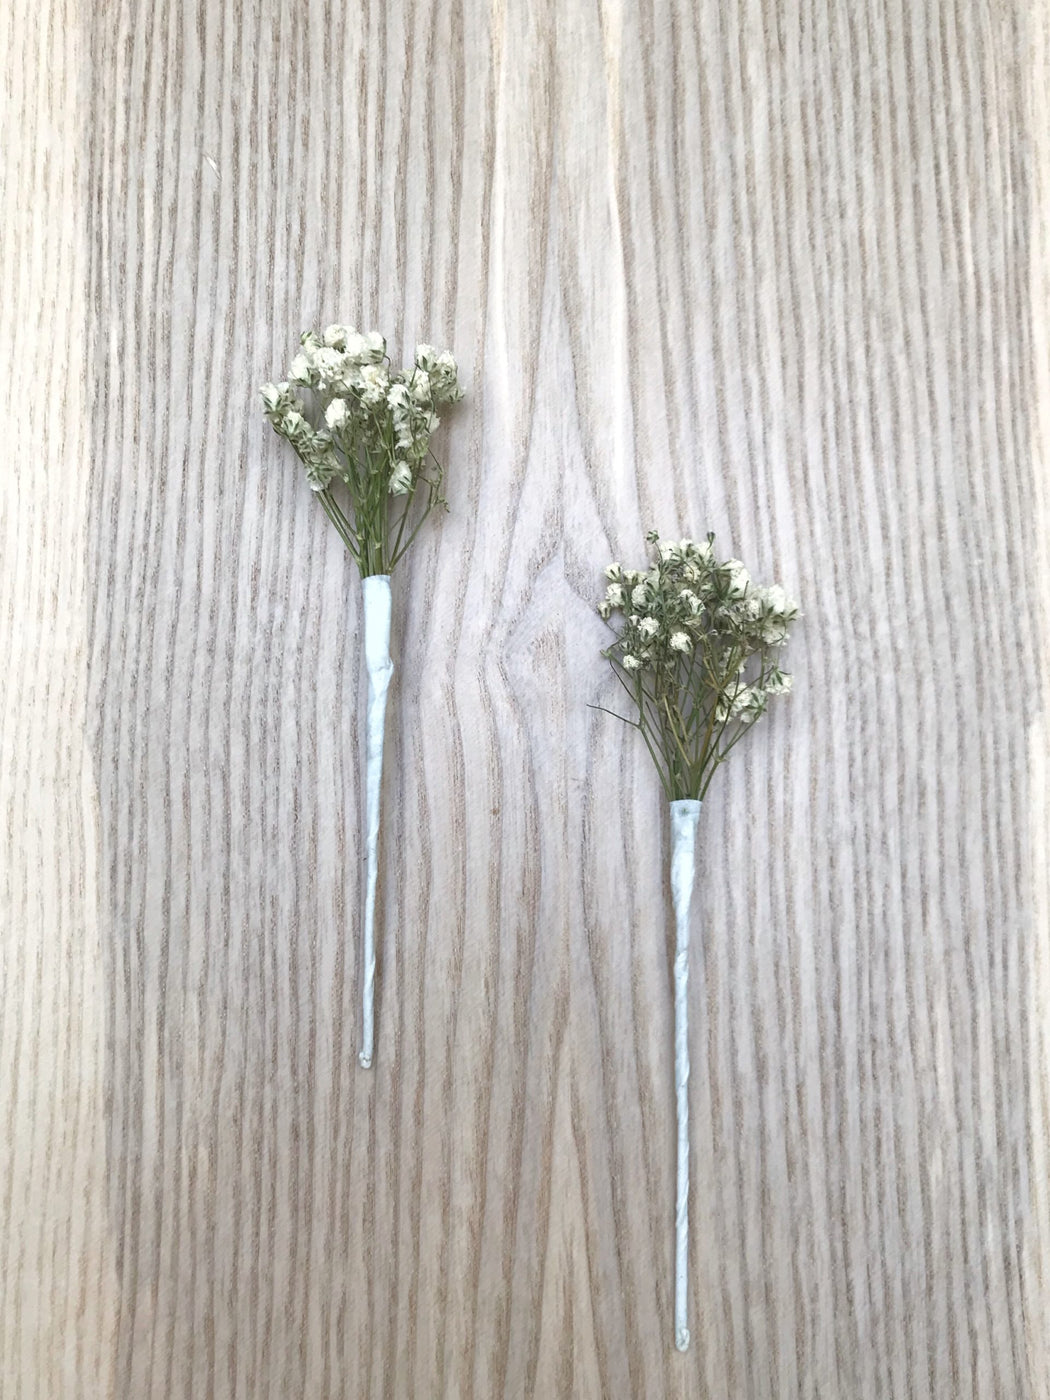 Two stabilized gypsophila spikes wedding hair decoration